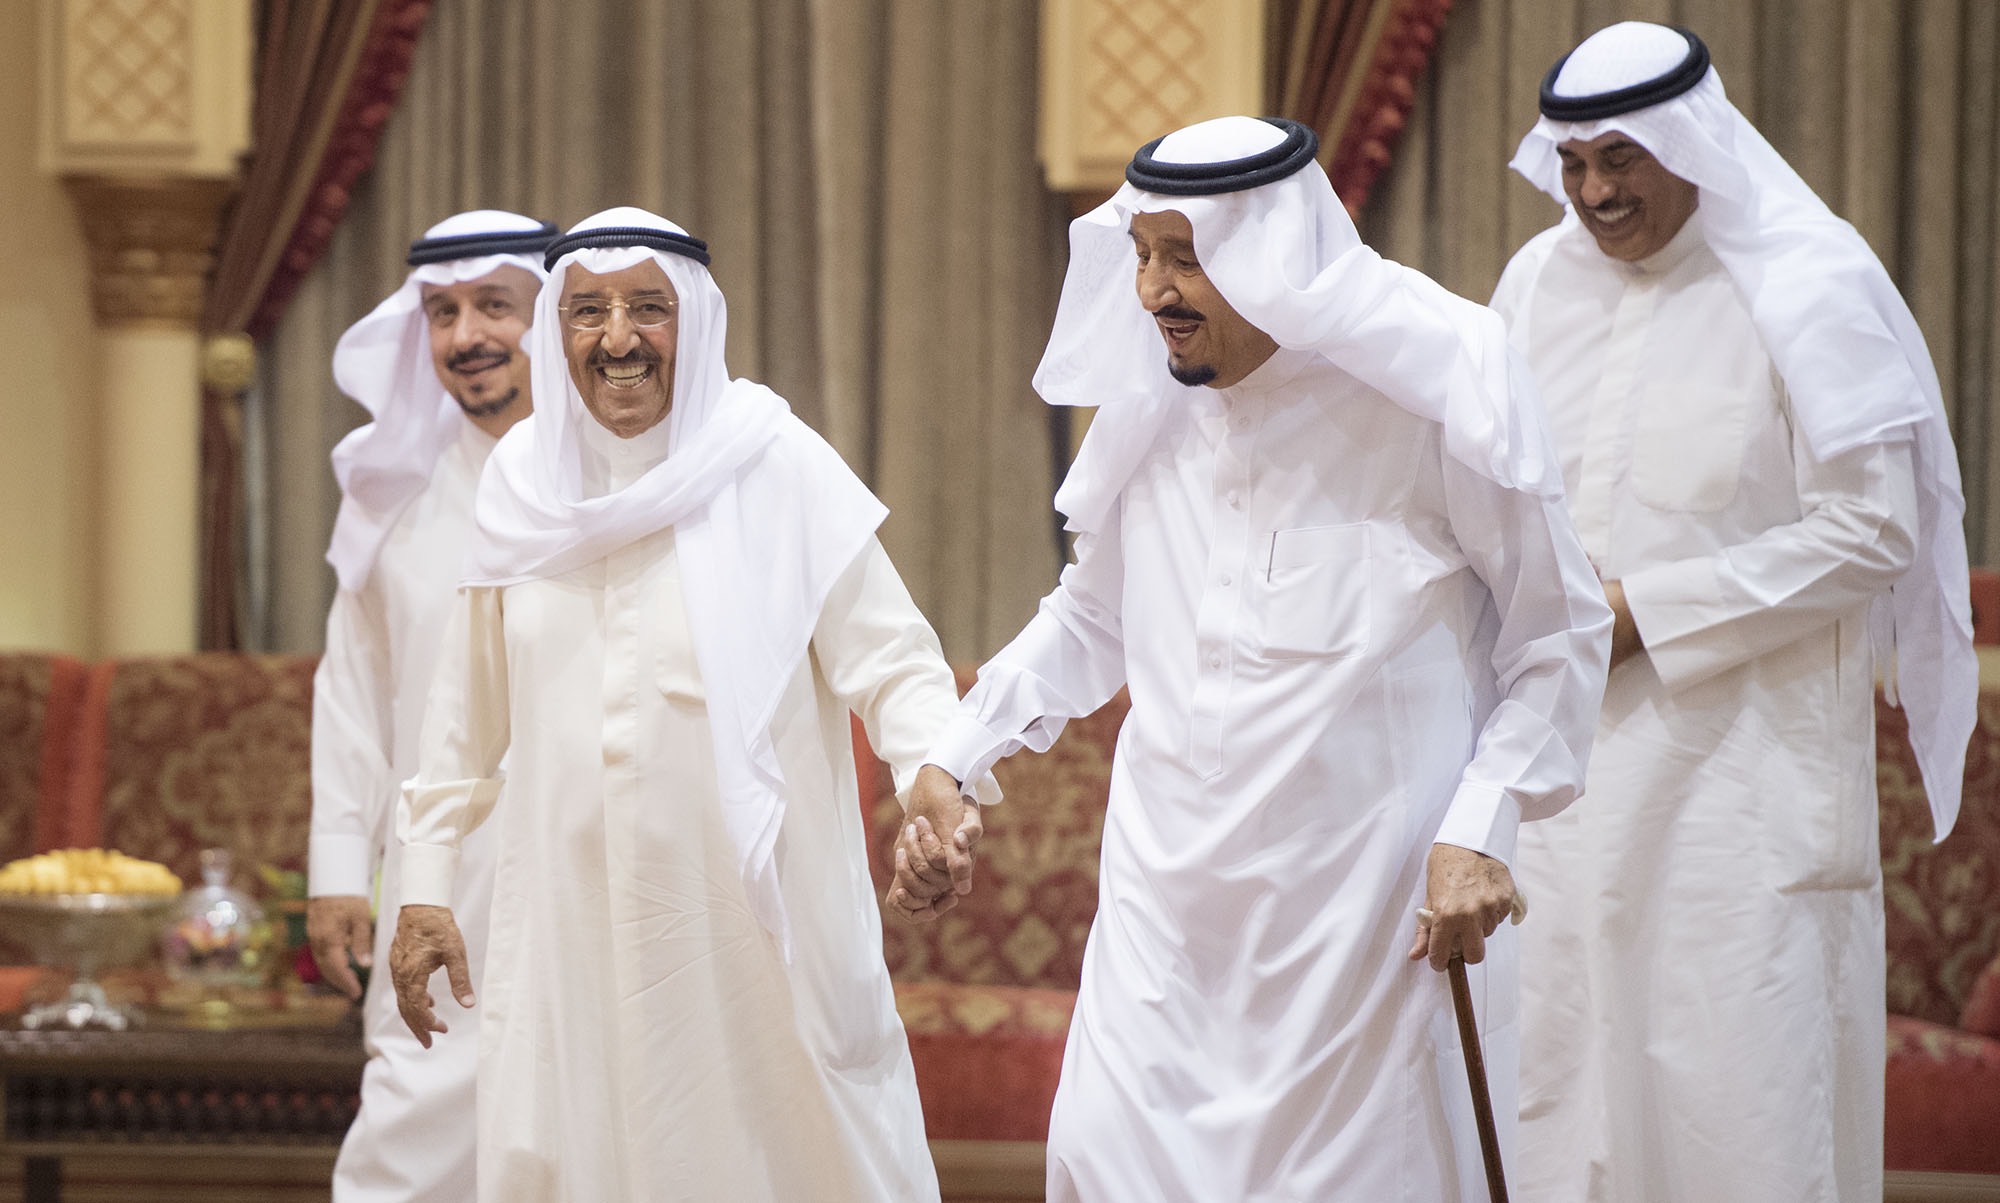 الملك سلمان يهنئ أمير الكويت هاتفيًا بعودته إلى بلاده بعد استكماله الفحوصات الطبية